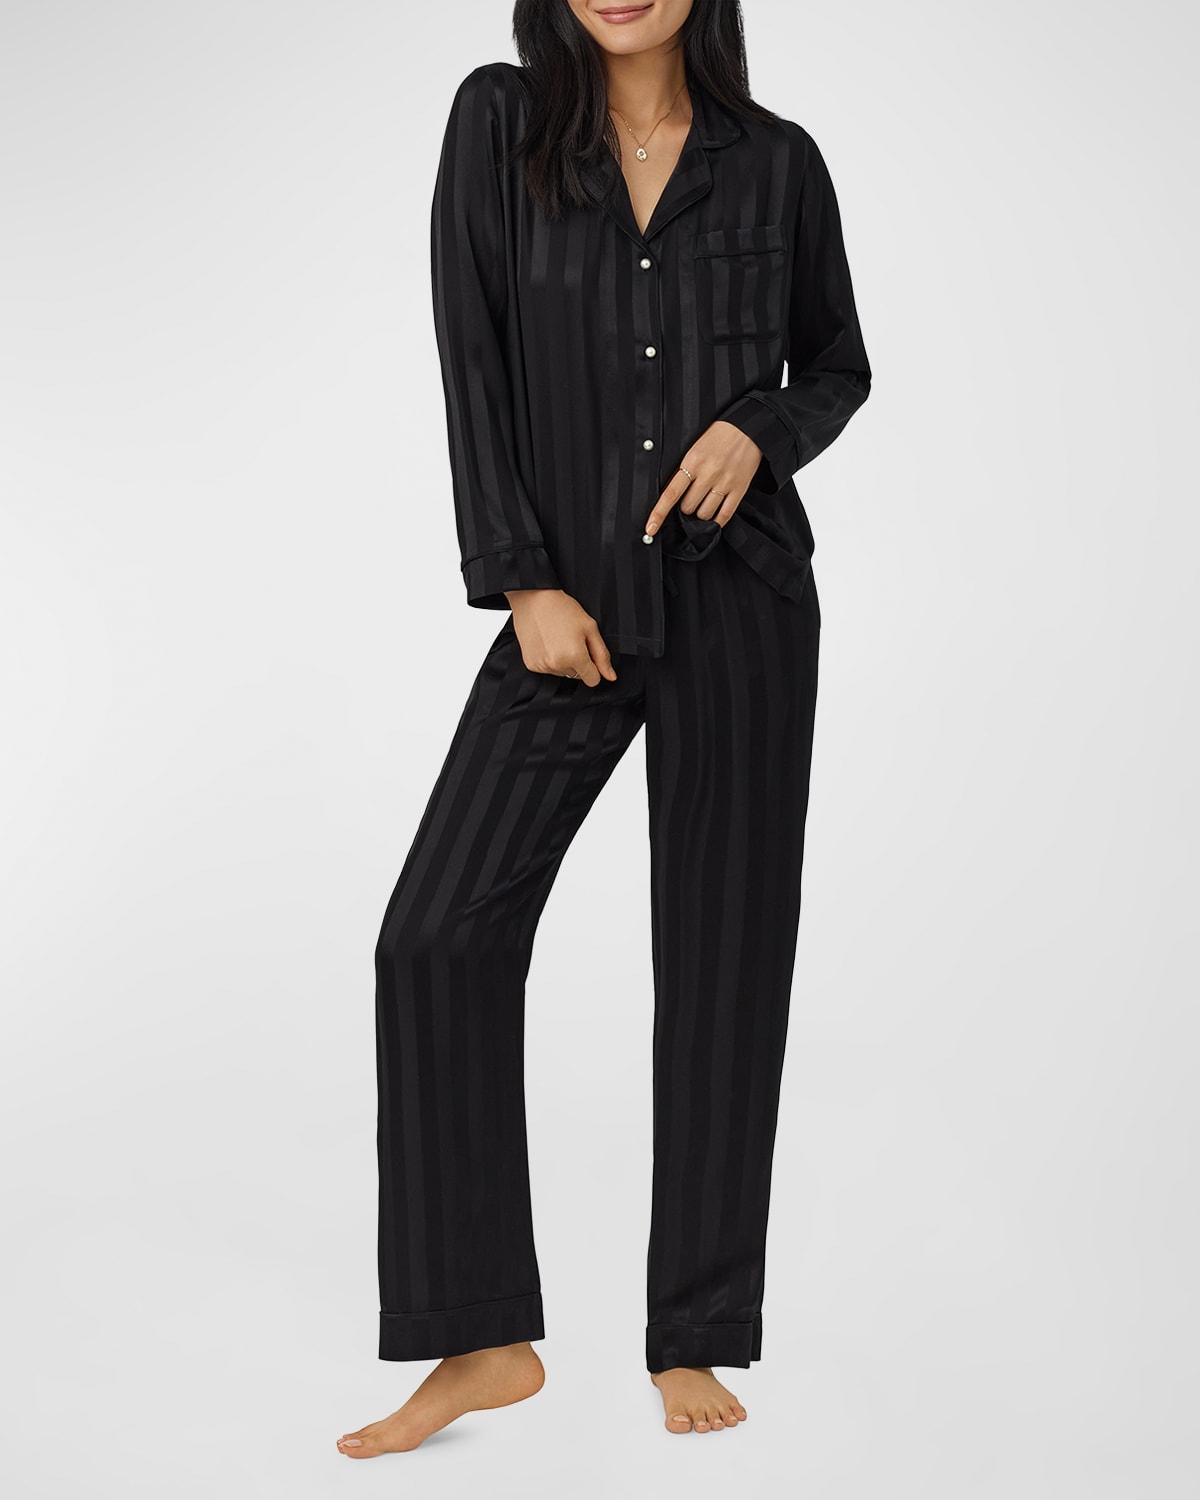 Bedhead Pajamas Striped Organic Cotton & Silk Pajama Set In Onyx